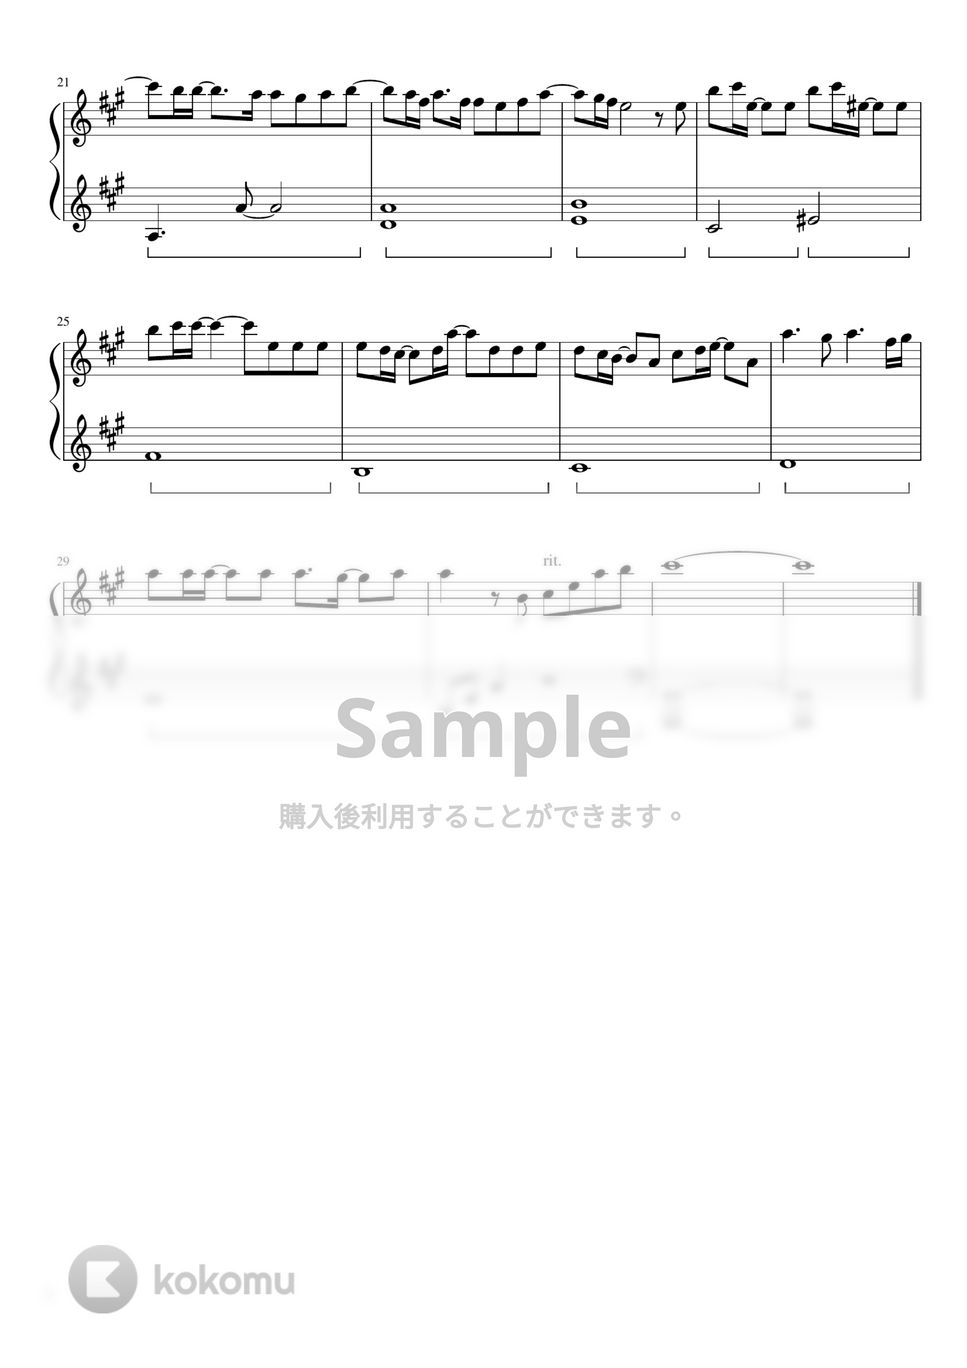 Official髭男dism - I LOVE...(ドラマピアノ簡単バージョン) (ドラマ「恋はつづくよどこまでも」) by ちゃんRINA。